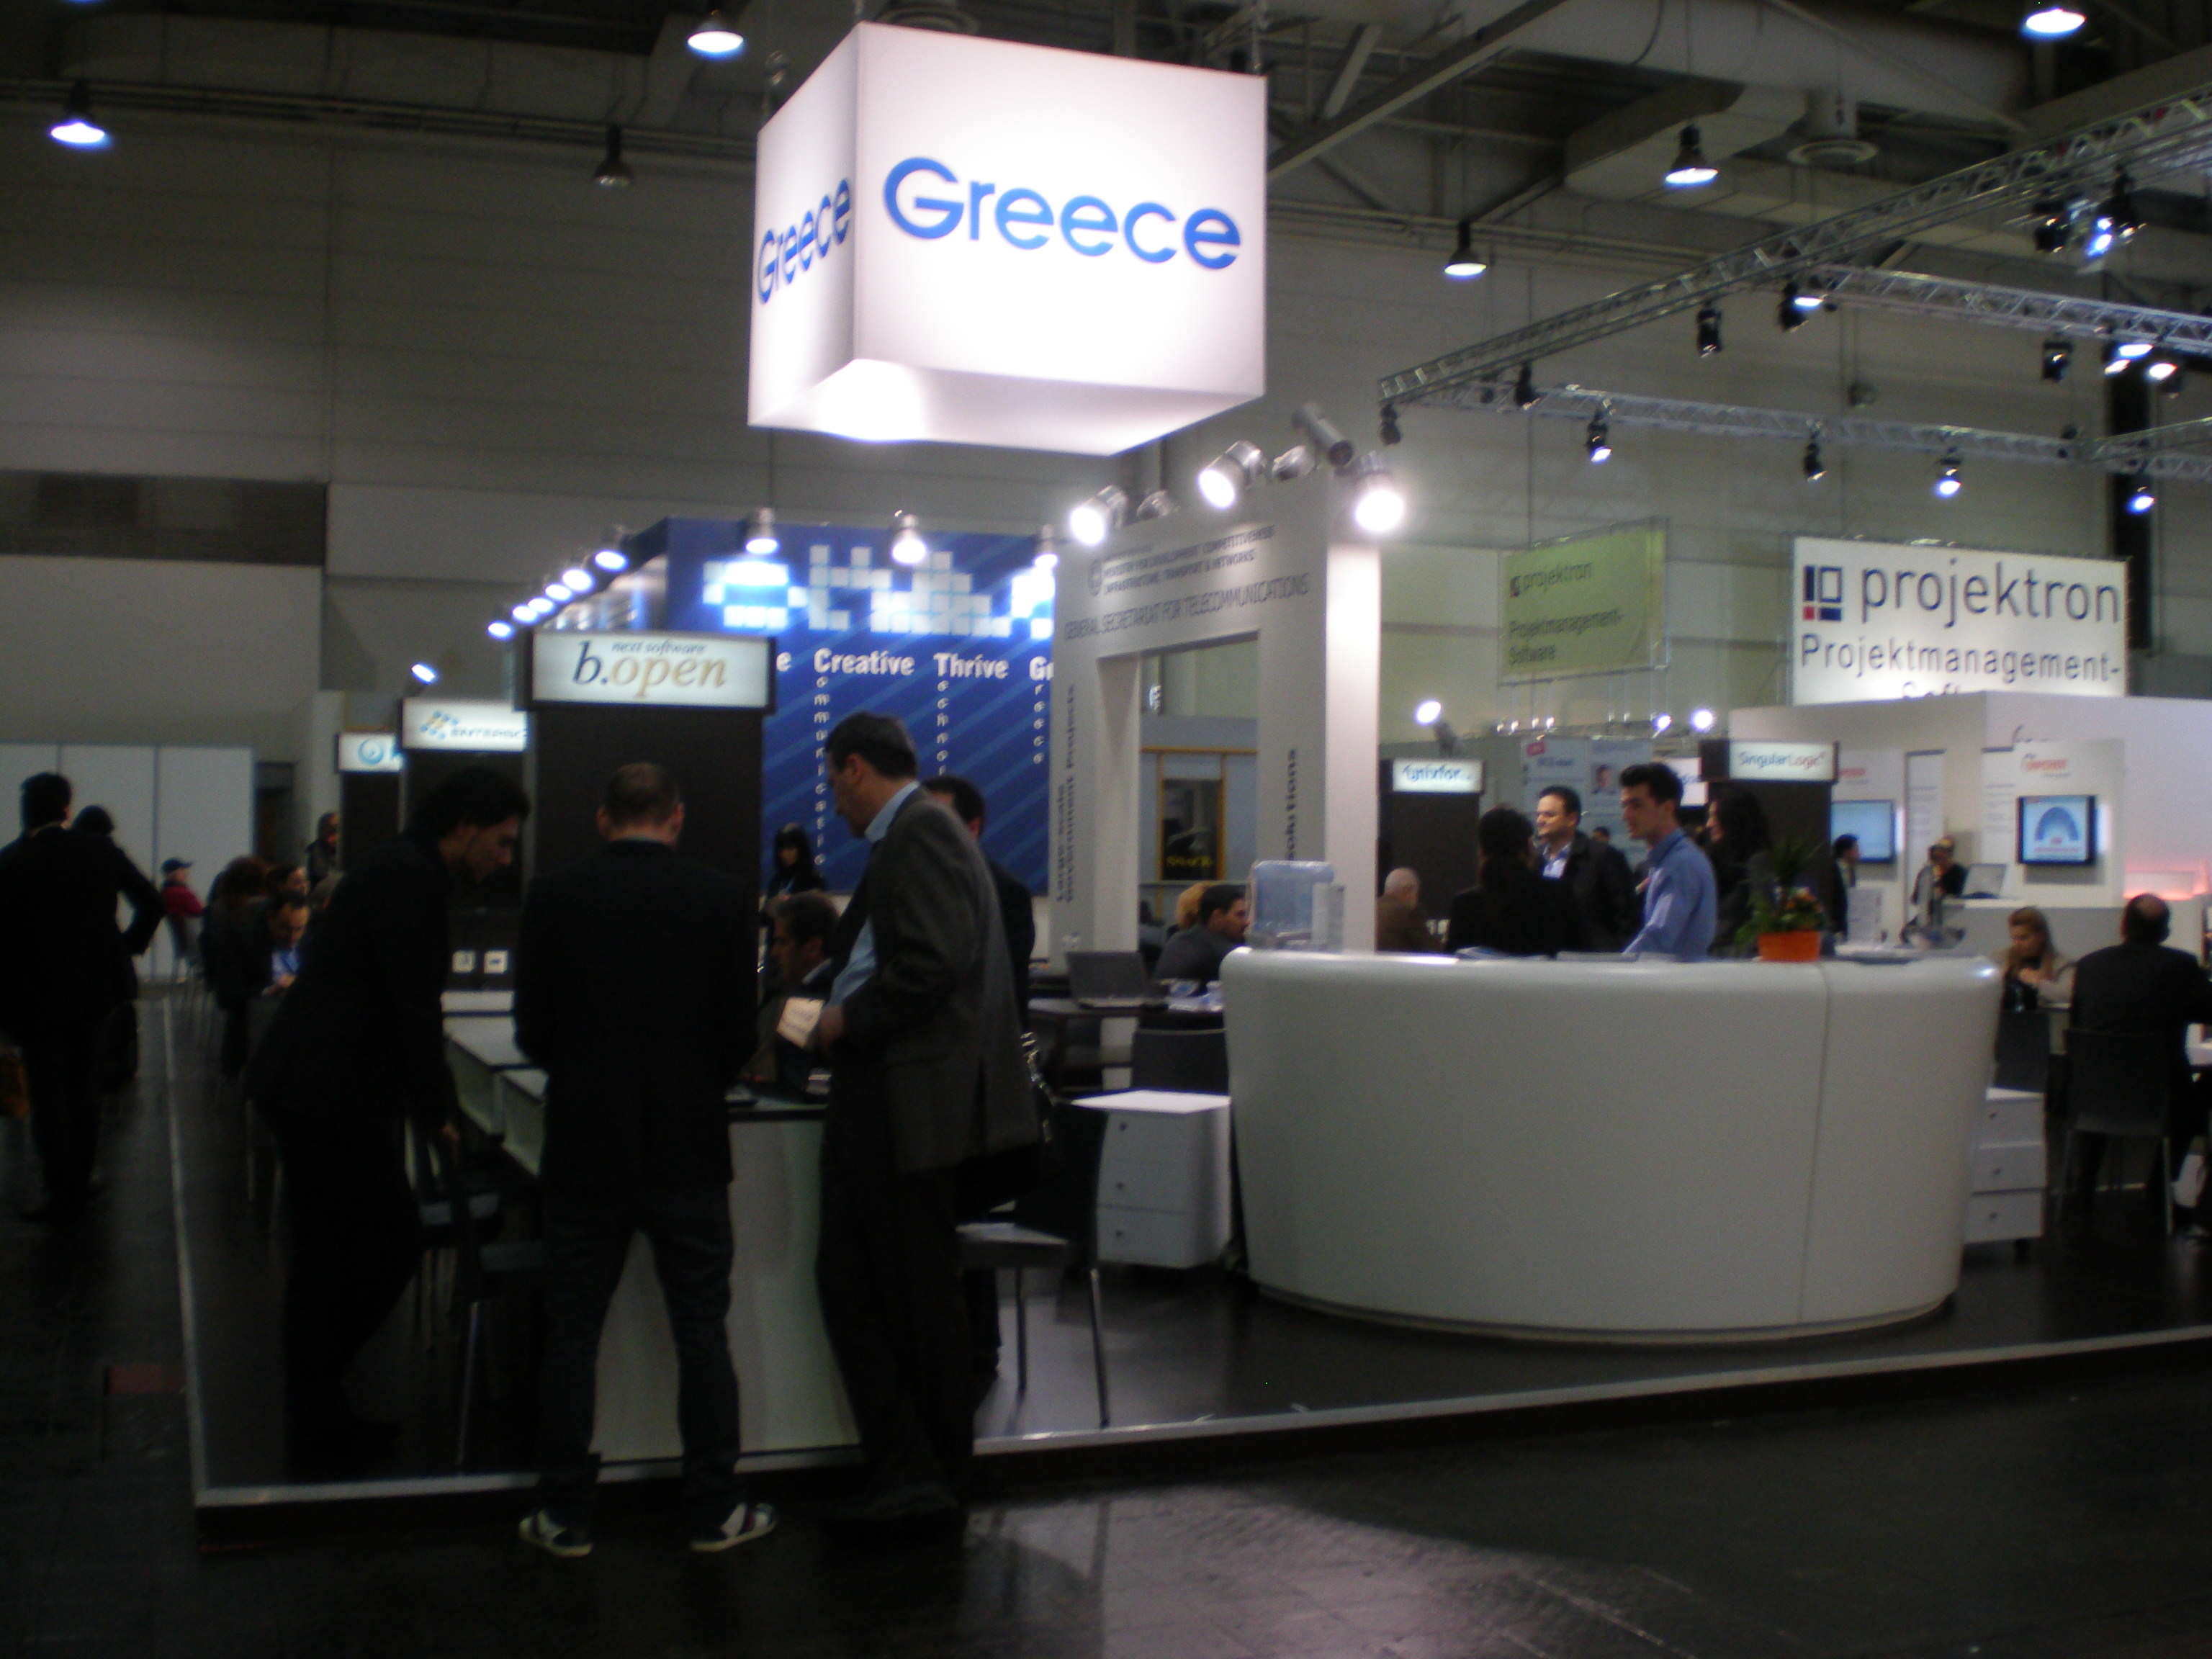 Ψηφιακά δίκτυα και επιχειρηματική δικτύωση: Η ελληνική παρουσία στη CeBIT 2013